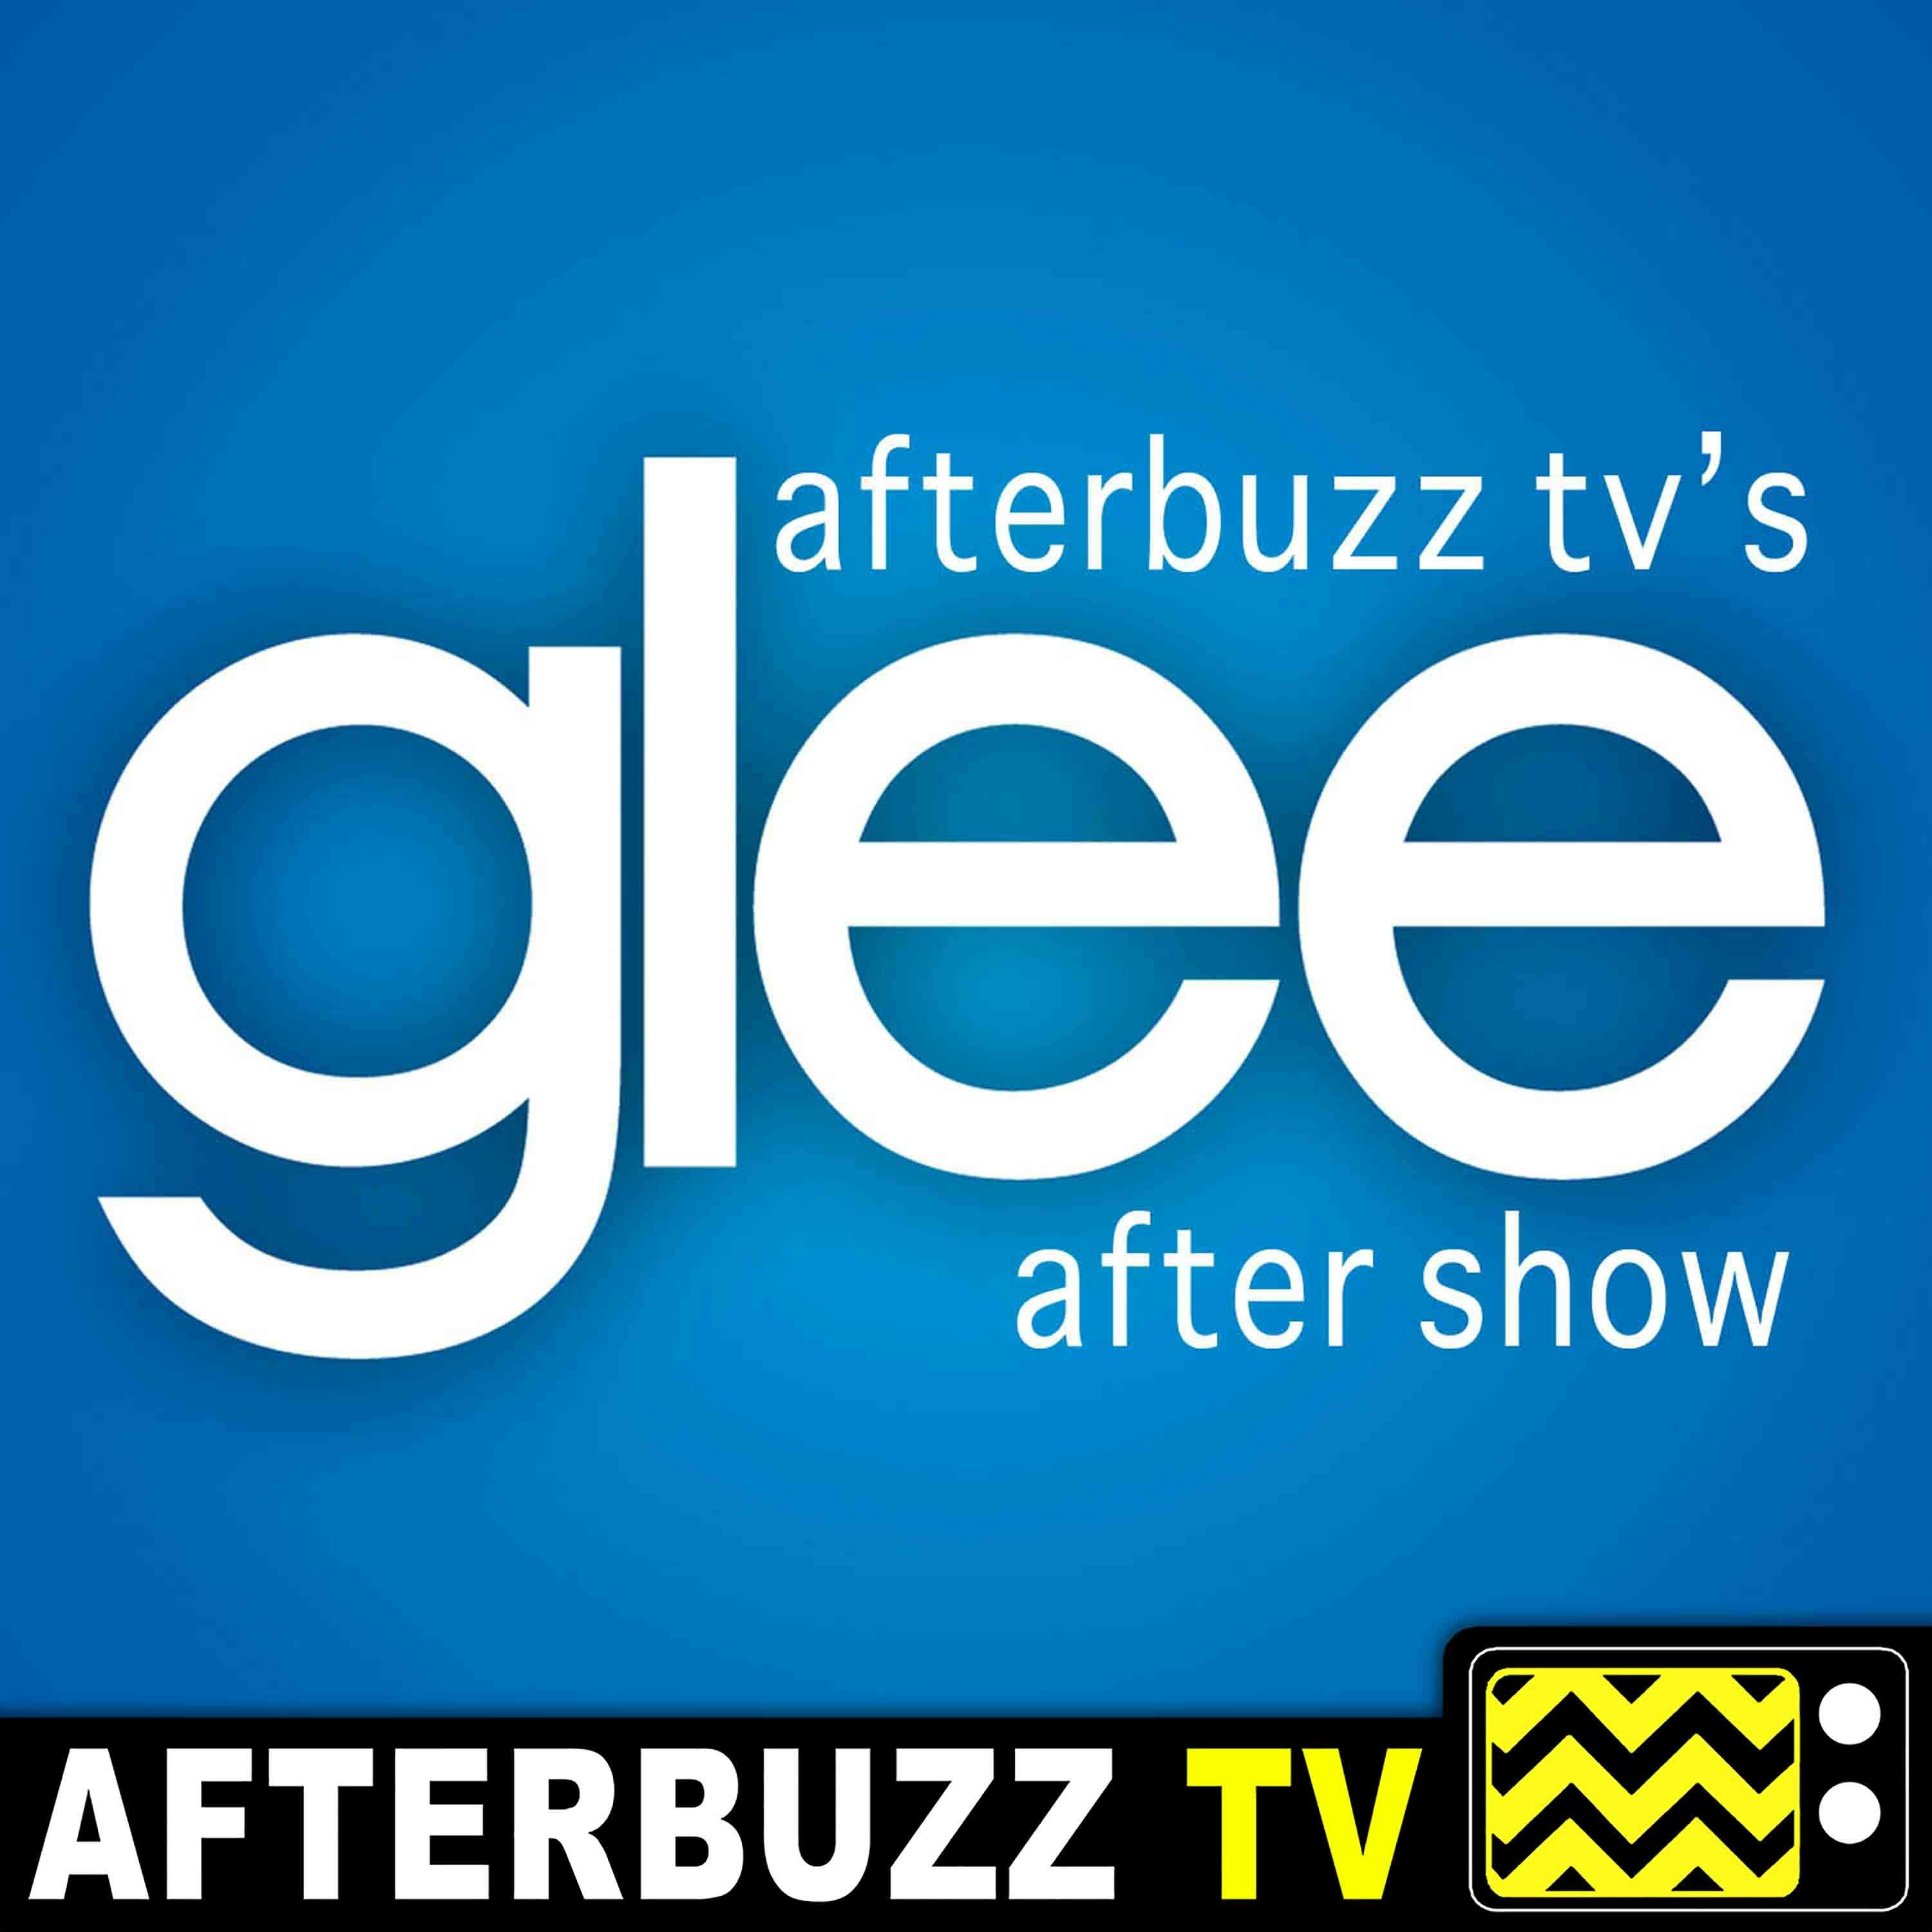 Glee S:6 | 2009; Dreams Come True E:12 & E:13 | AfterBuzz TV AfterShow